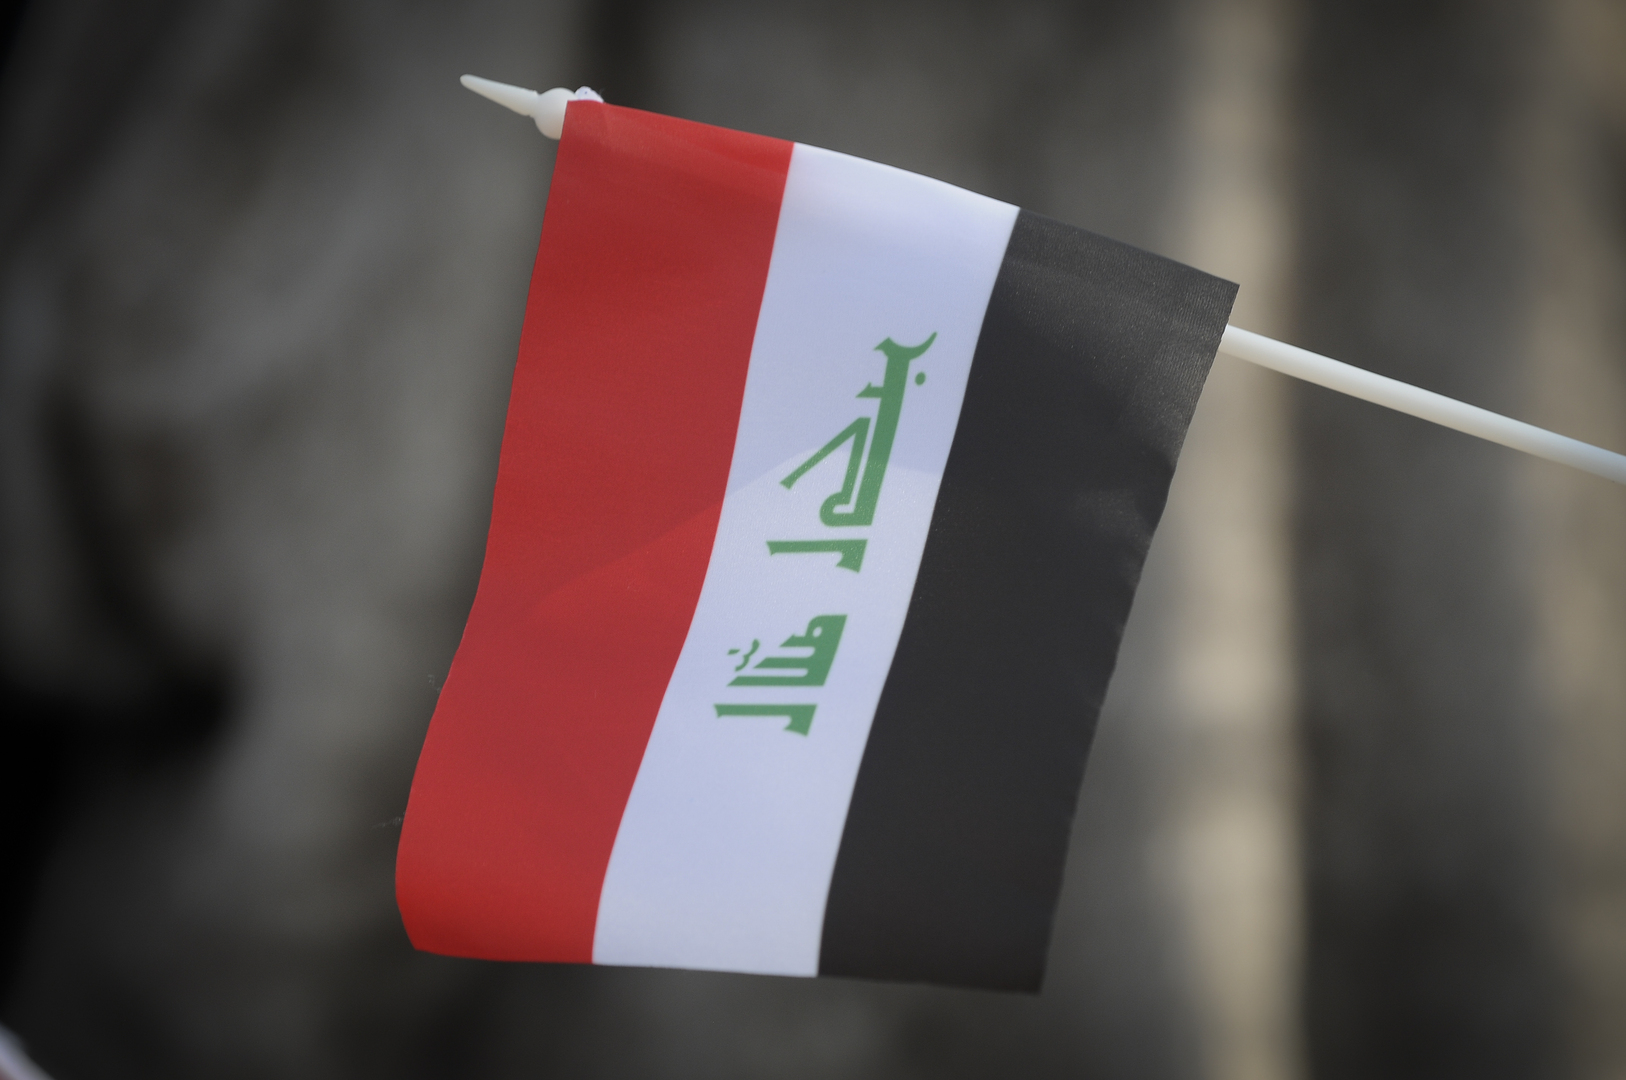 الحلبوسي: مجلس النواب سيقدم بندا طارئا لاتحاد البرلمان الدولي للمطالبة بحفظ سيادة العراق